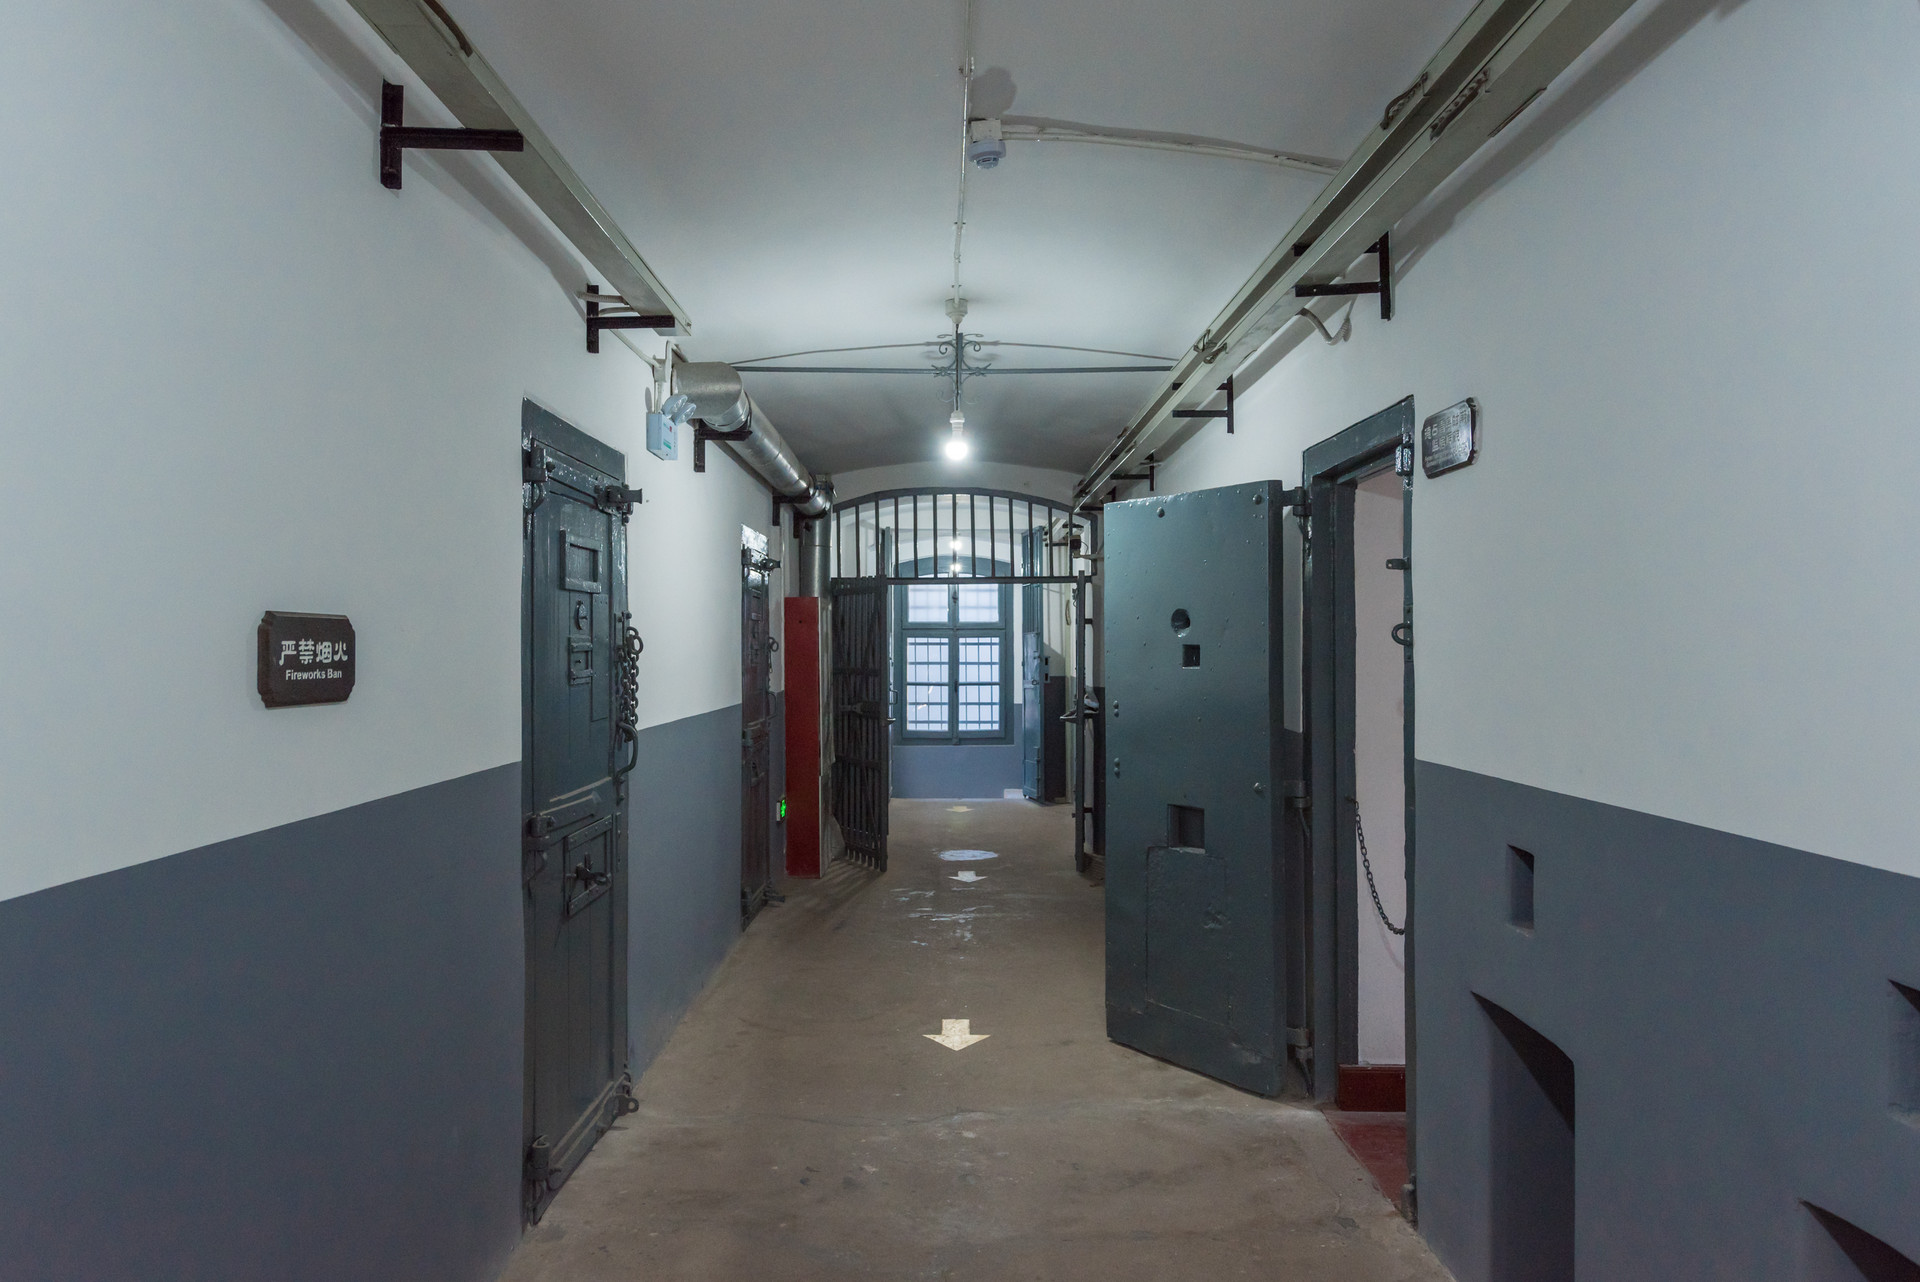 这座监狱使用了95年,曾经专门关押外国人,现在成旅游景点